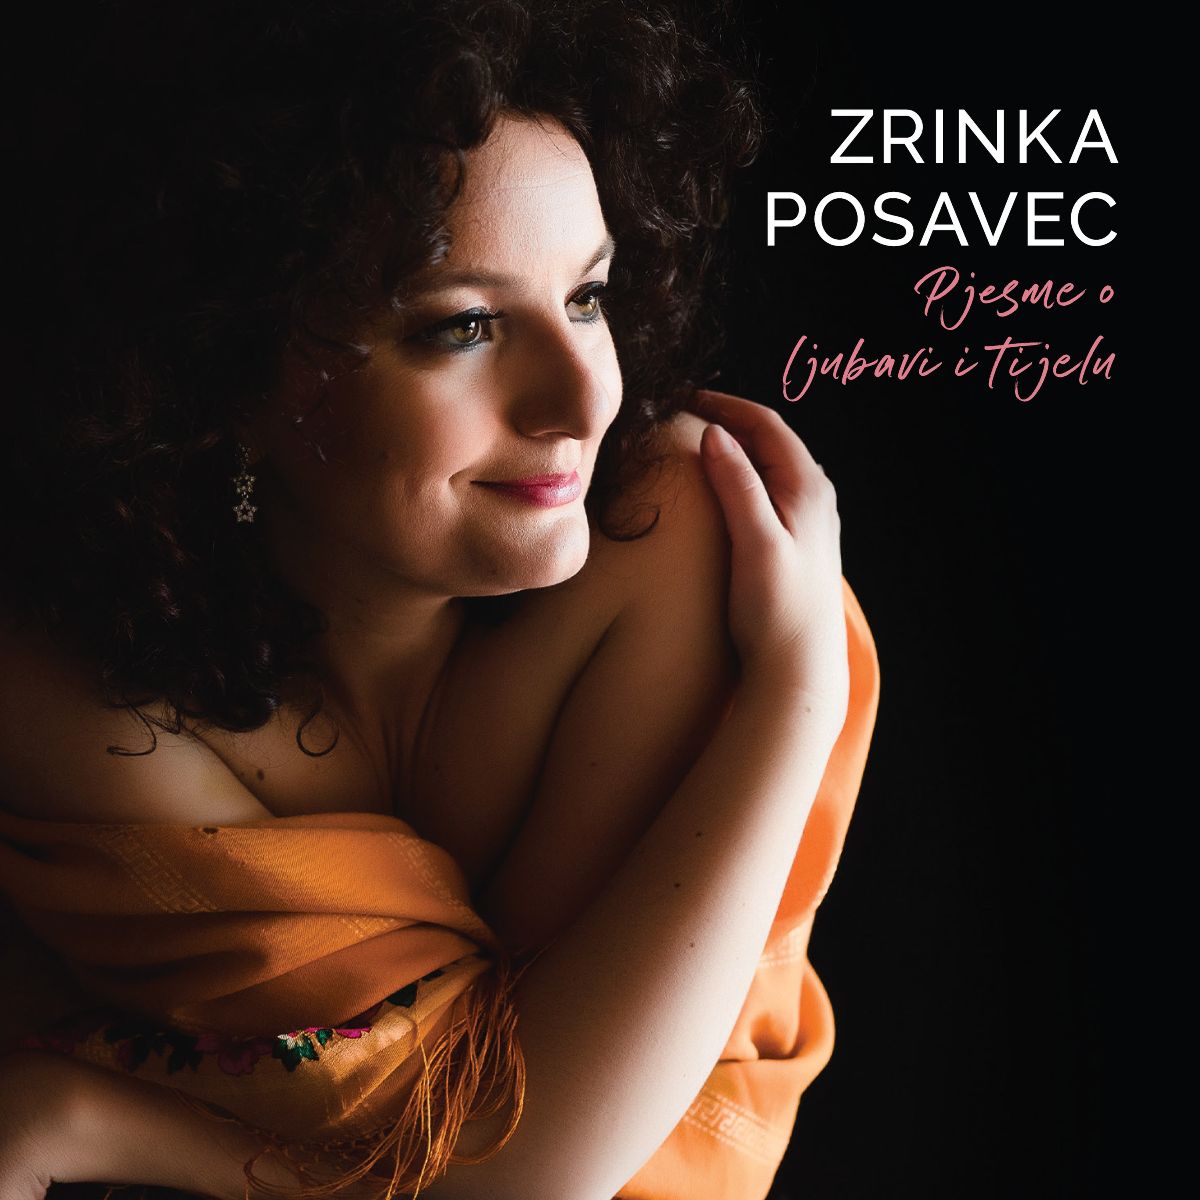 Svestrana umjetnica Zrinka Posavec otkrila “Pjesme o ljubavi i tijelu”, novi autorski world music album